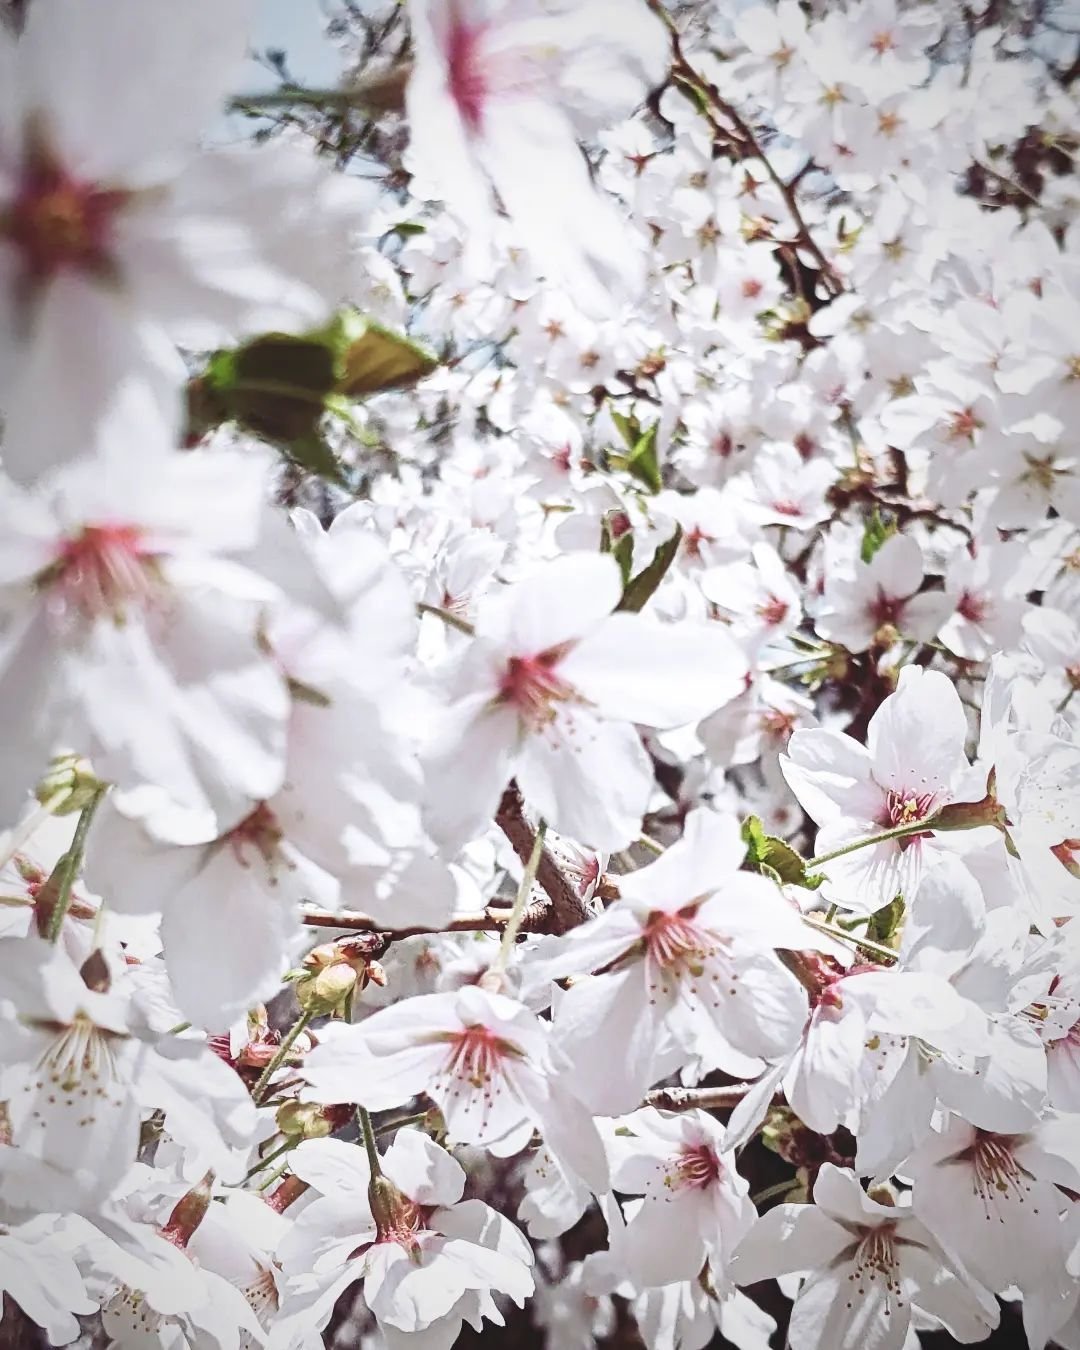 blossoms upon blossoms 

#cherryblossom #sakura #桜